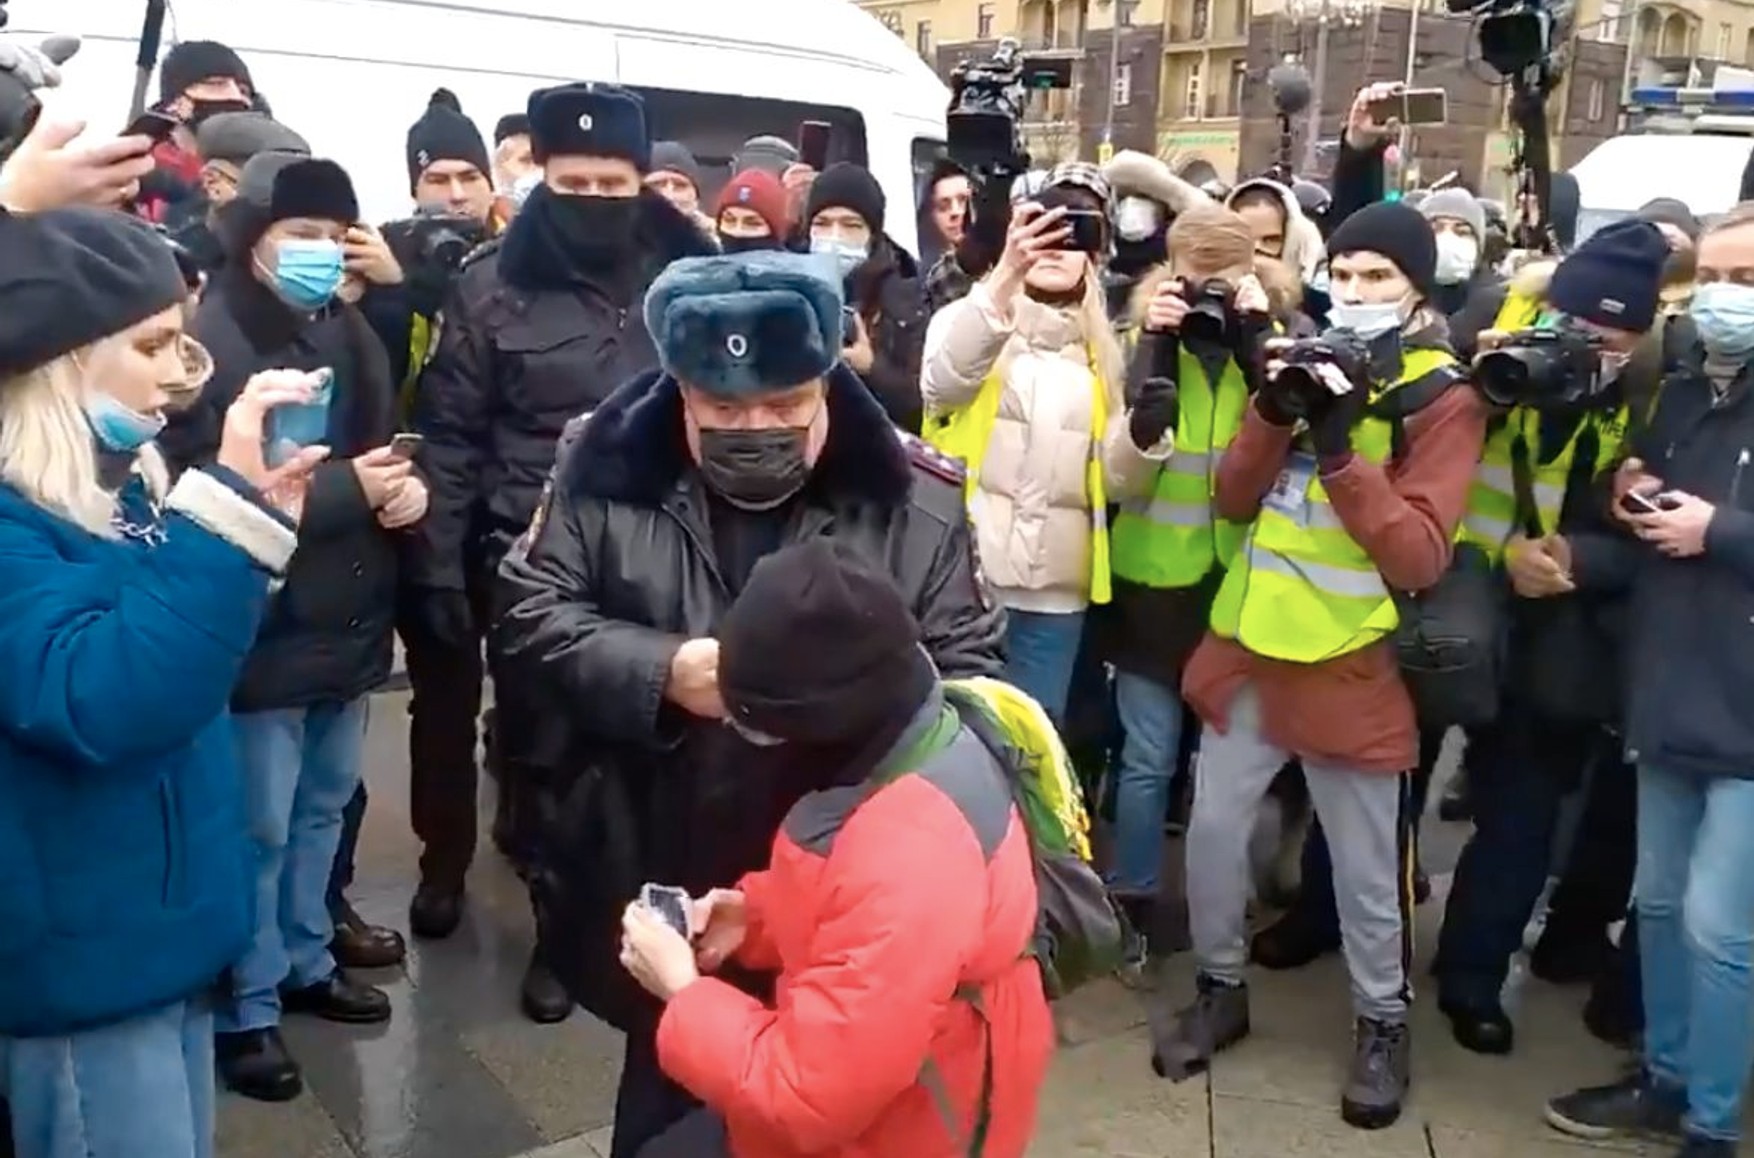 У Москві на акції в підтримку Навального грубо затримали дитини. Поліція заявила, що просто вивела його за периметр - відео